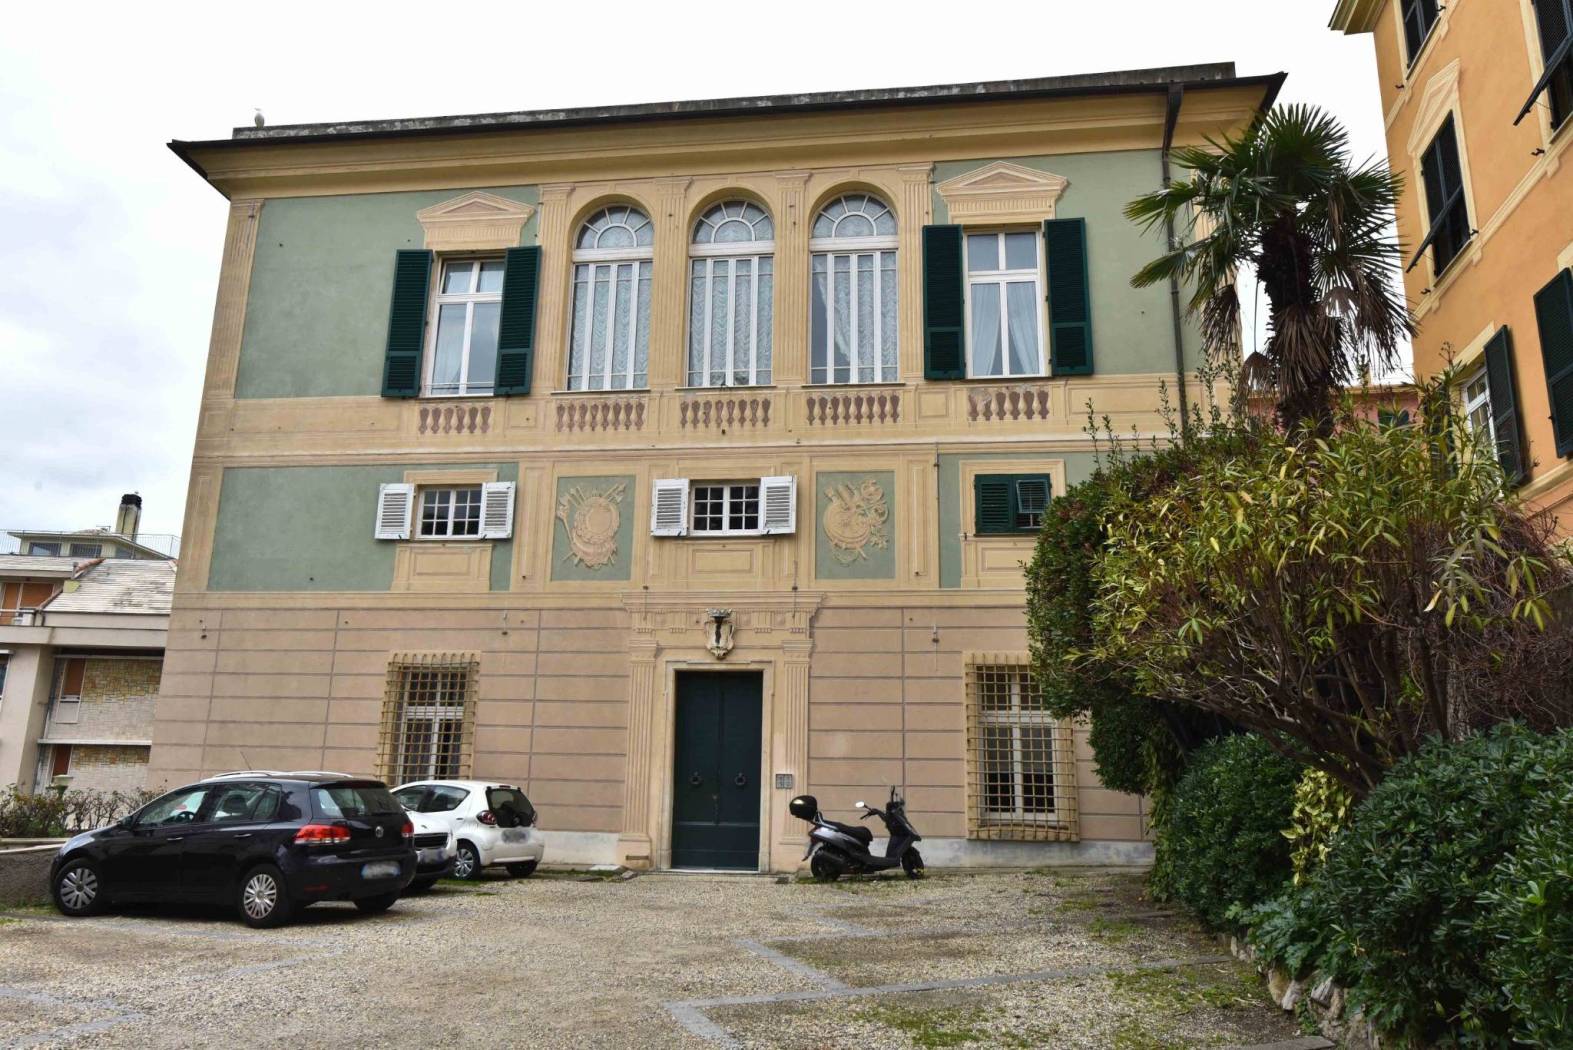 ALBARO VIA SAN NAZARO (parte verso Via Oderico/Via Albaro) in villa del 1500 denominata Villa De Marini appartamento di vani 7,5 , di mq 155 su due 